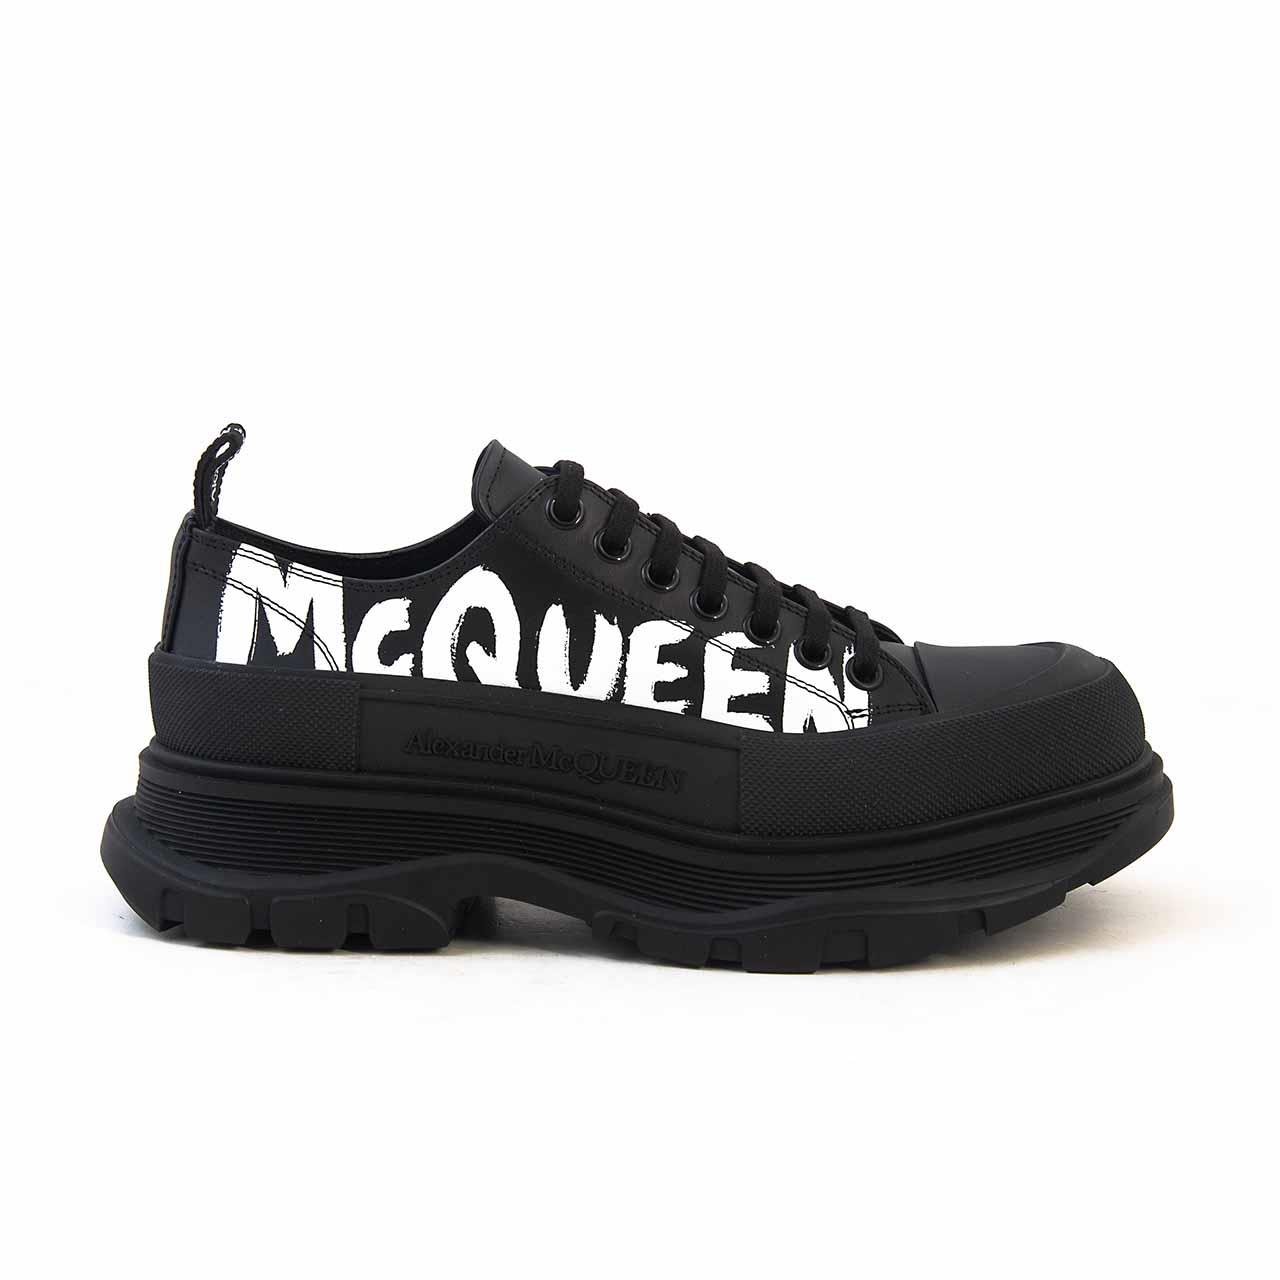 Alexander Mcqueen Men's Sports & Sneakers